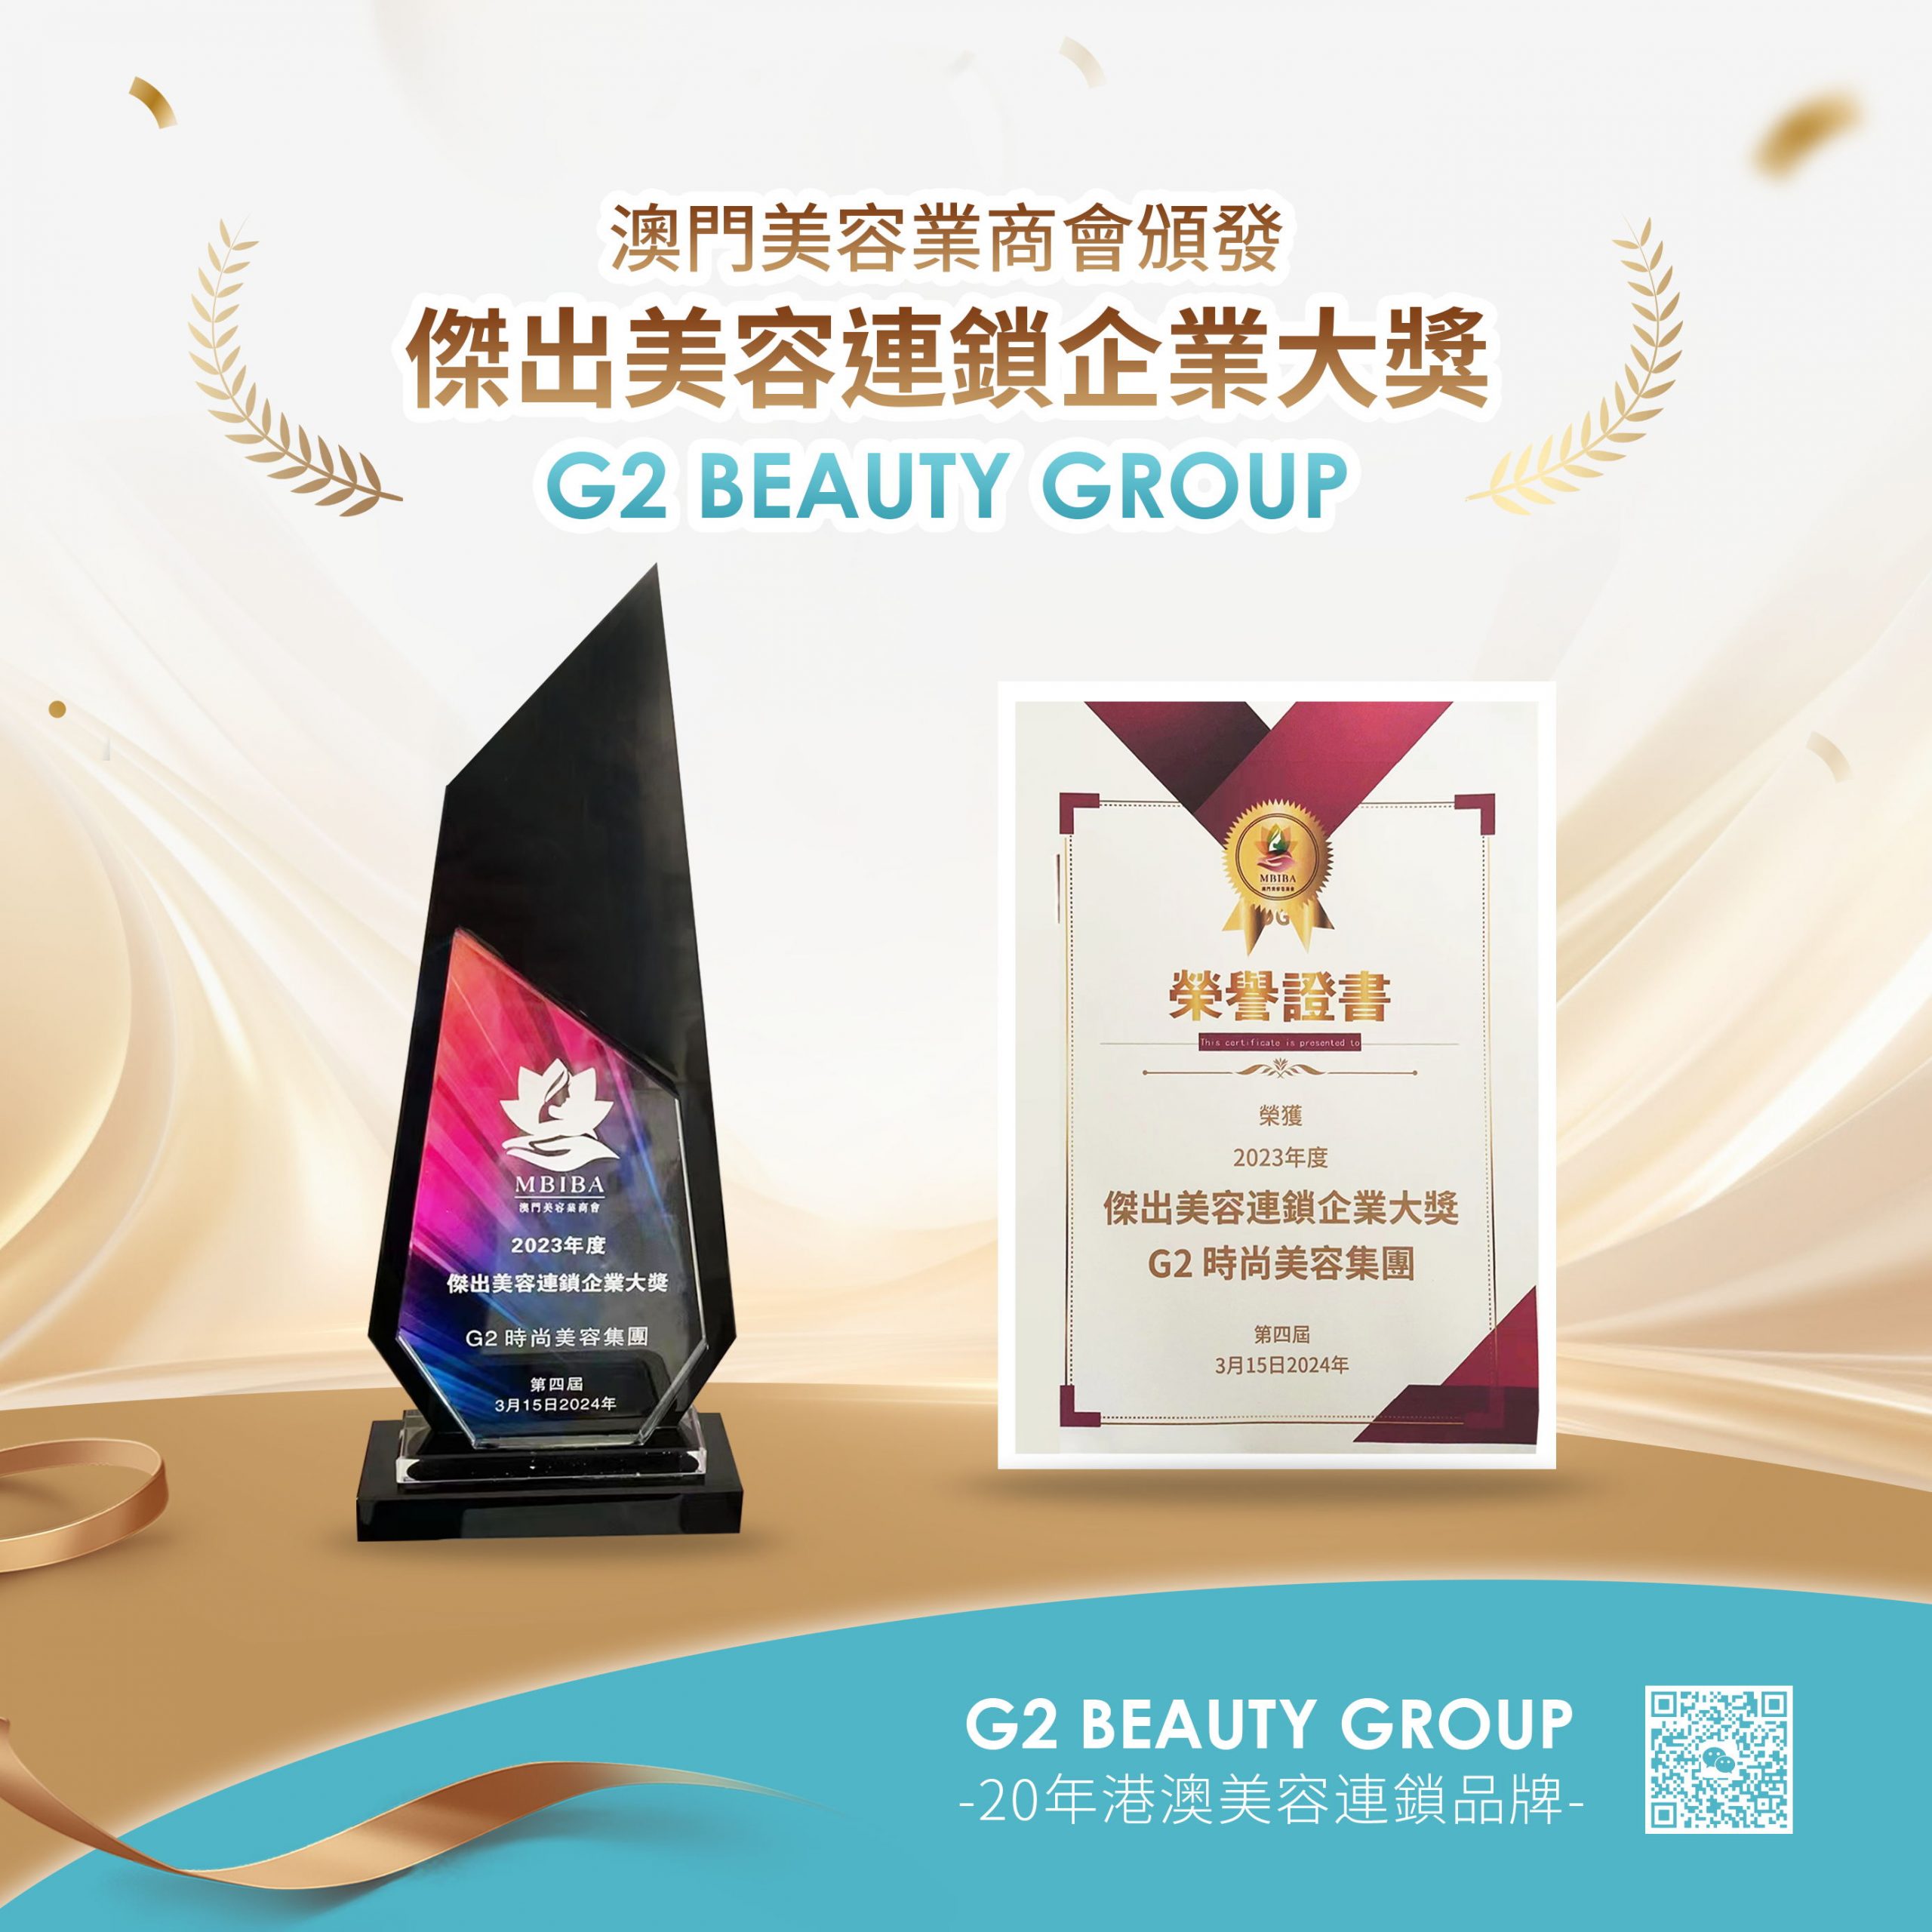 祝賀 G2 Beauty 榮獲2023年度『傑出美容連鎖企業大獎』